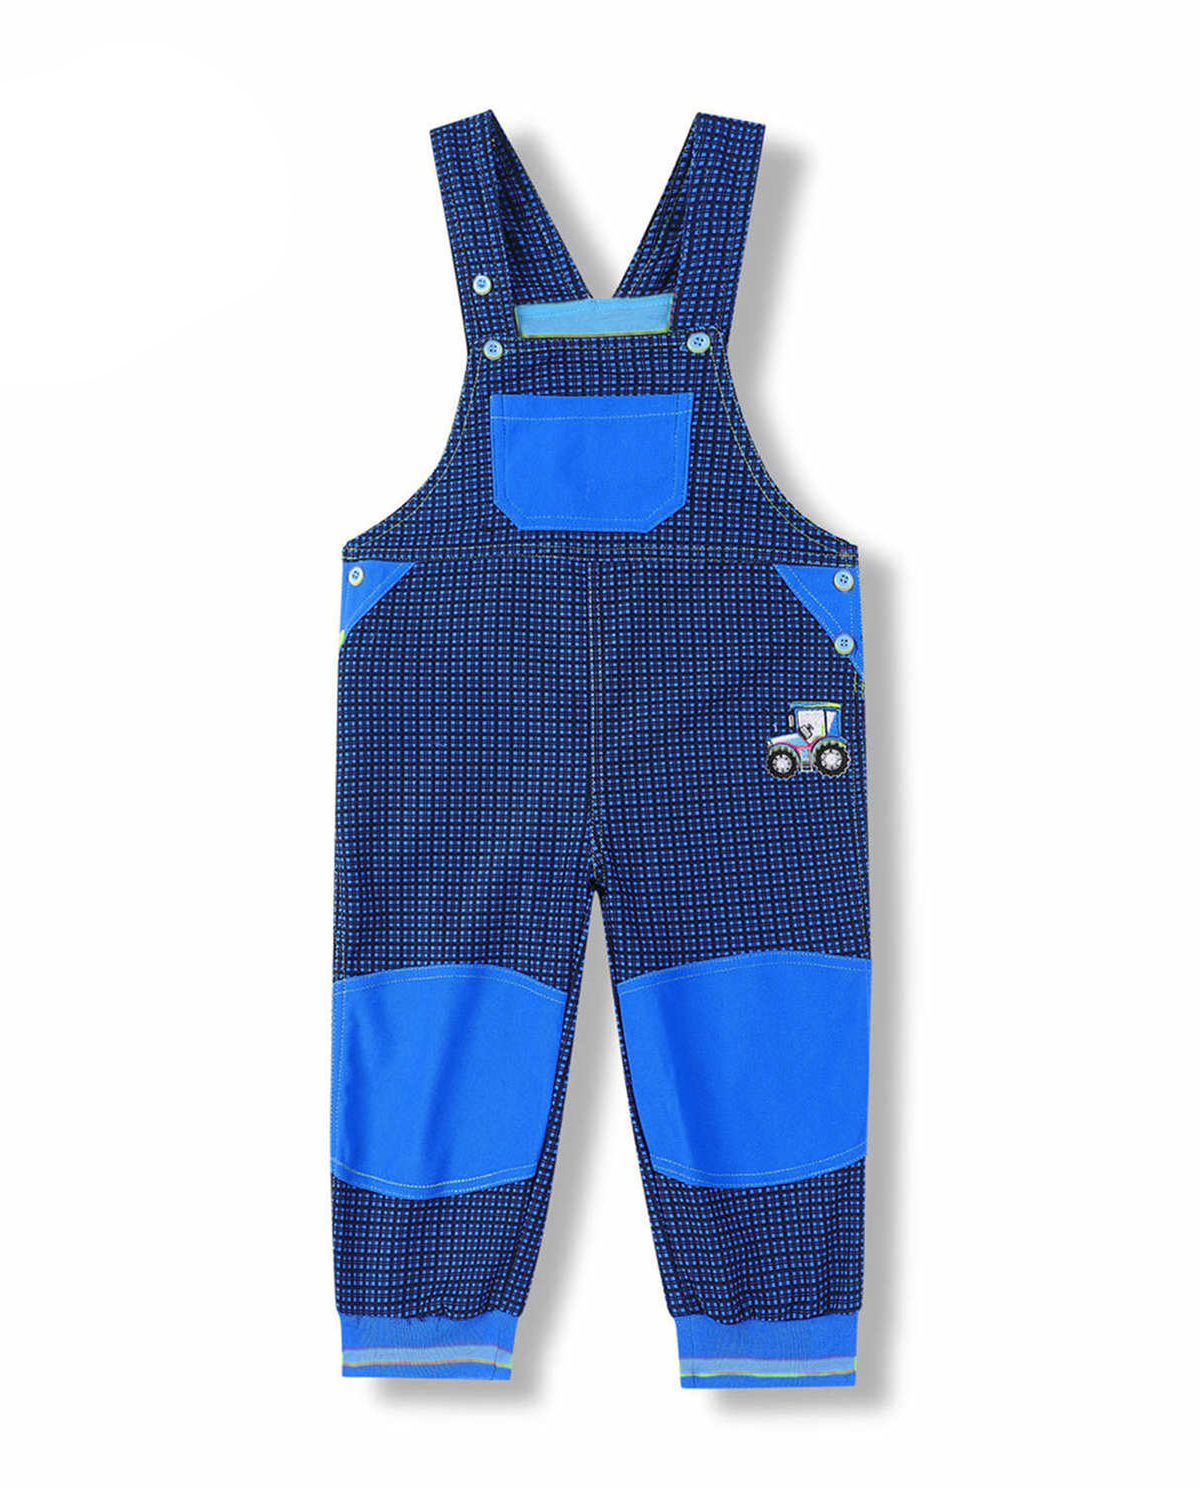 Levně Chapecké laclové outdoorové kalhoty - KUGO G8557, modrá / modré knoflíky Barva: Modrá